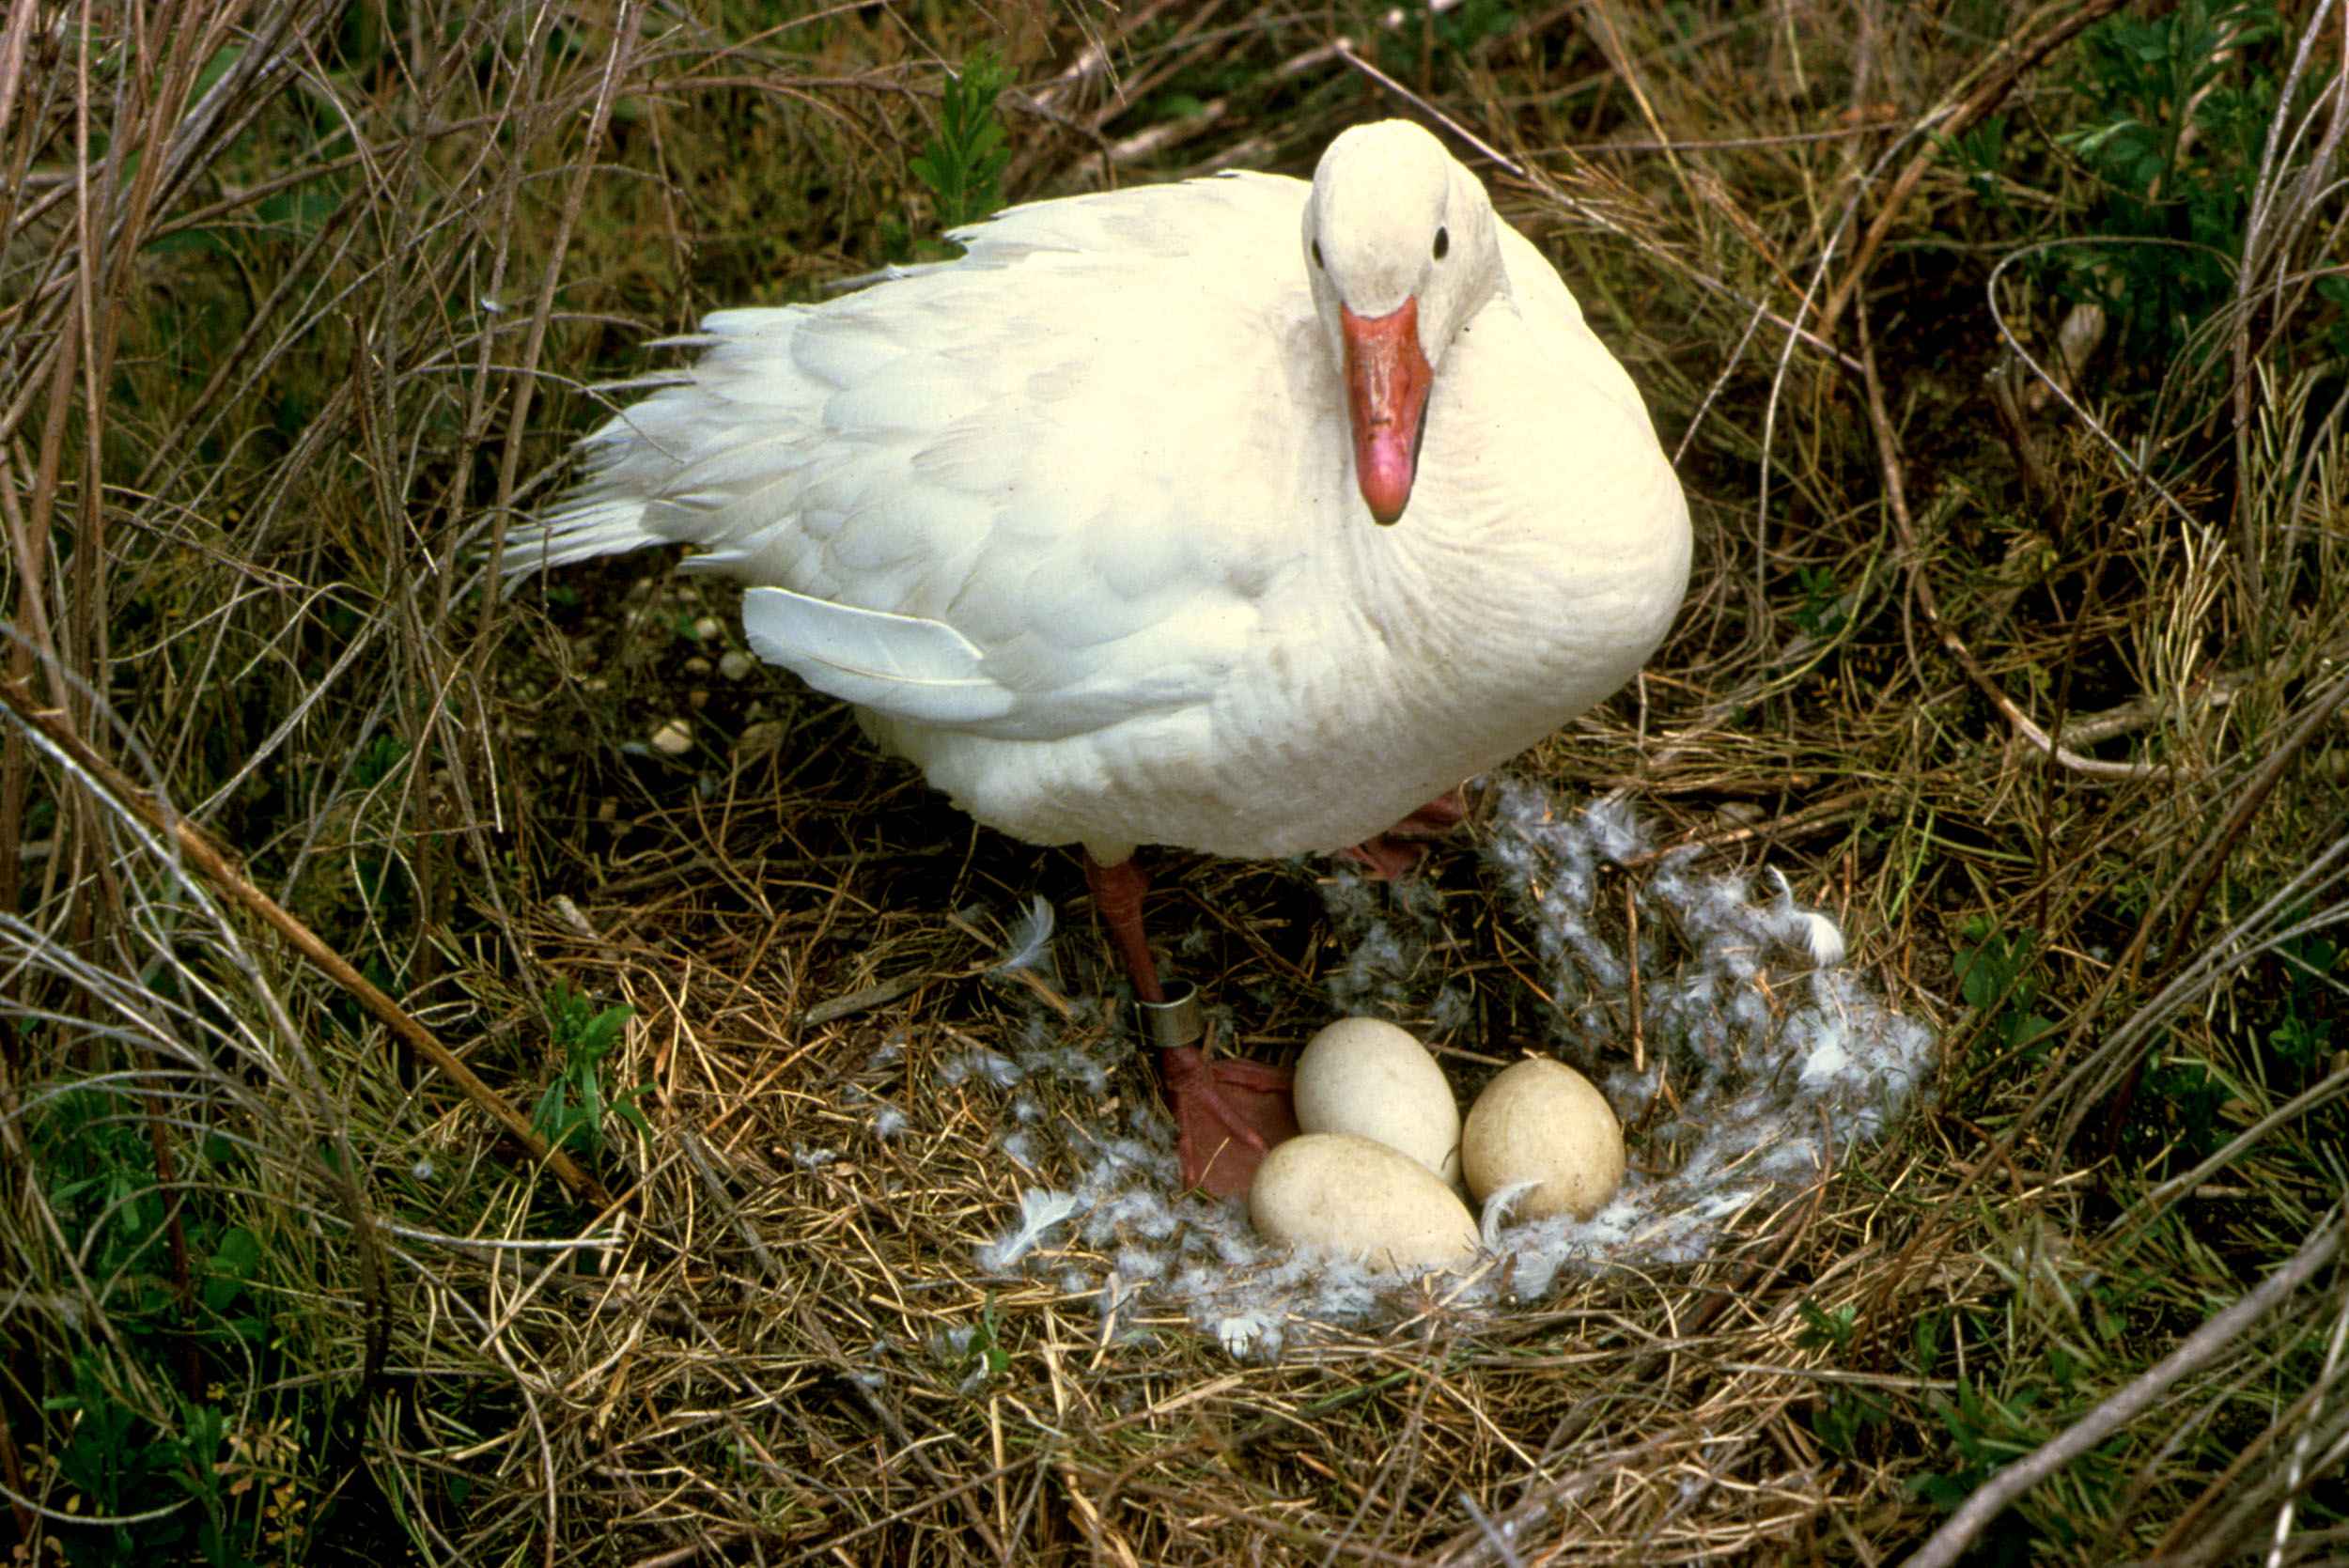 刚从蛋里孵化出来的新生小鹅 库存图片. 图片 包括有 烧杯, 幼鹅, 鸡蛋, 敌意, 生日, 硼硅酸盐 - 184525543